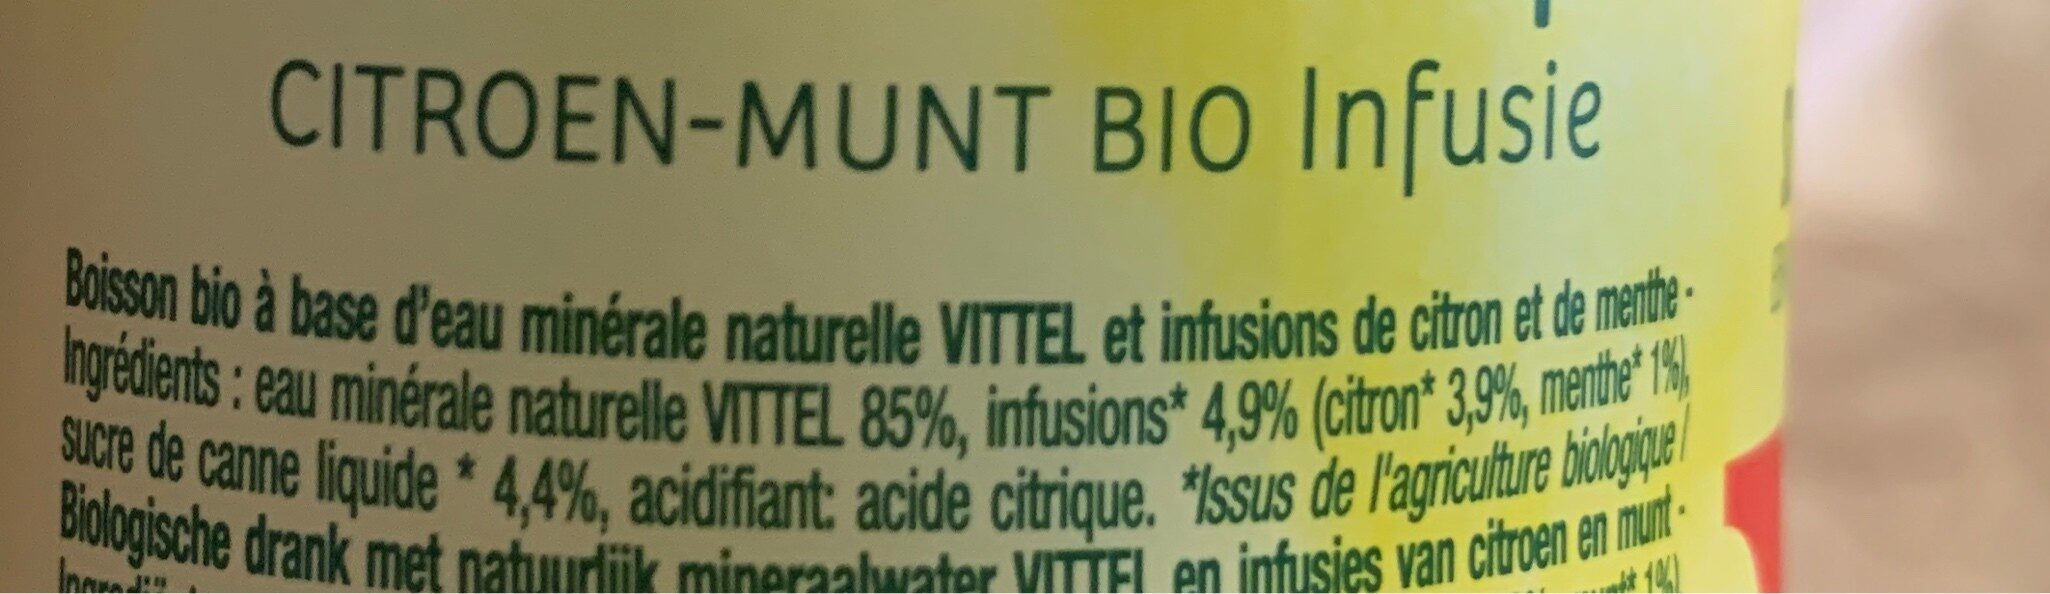 Citron menthe bio infusés - Ingredients - fr